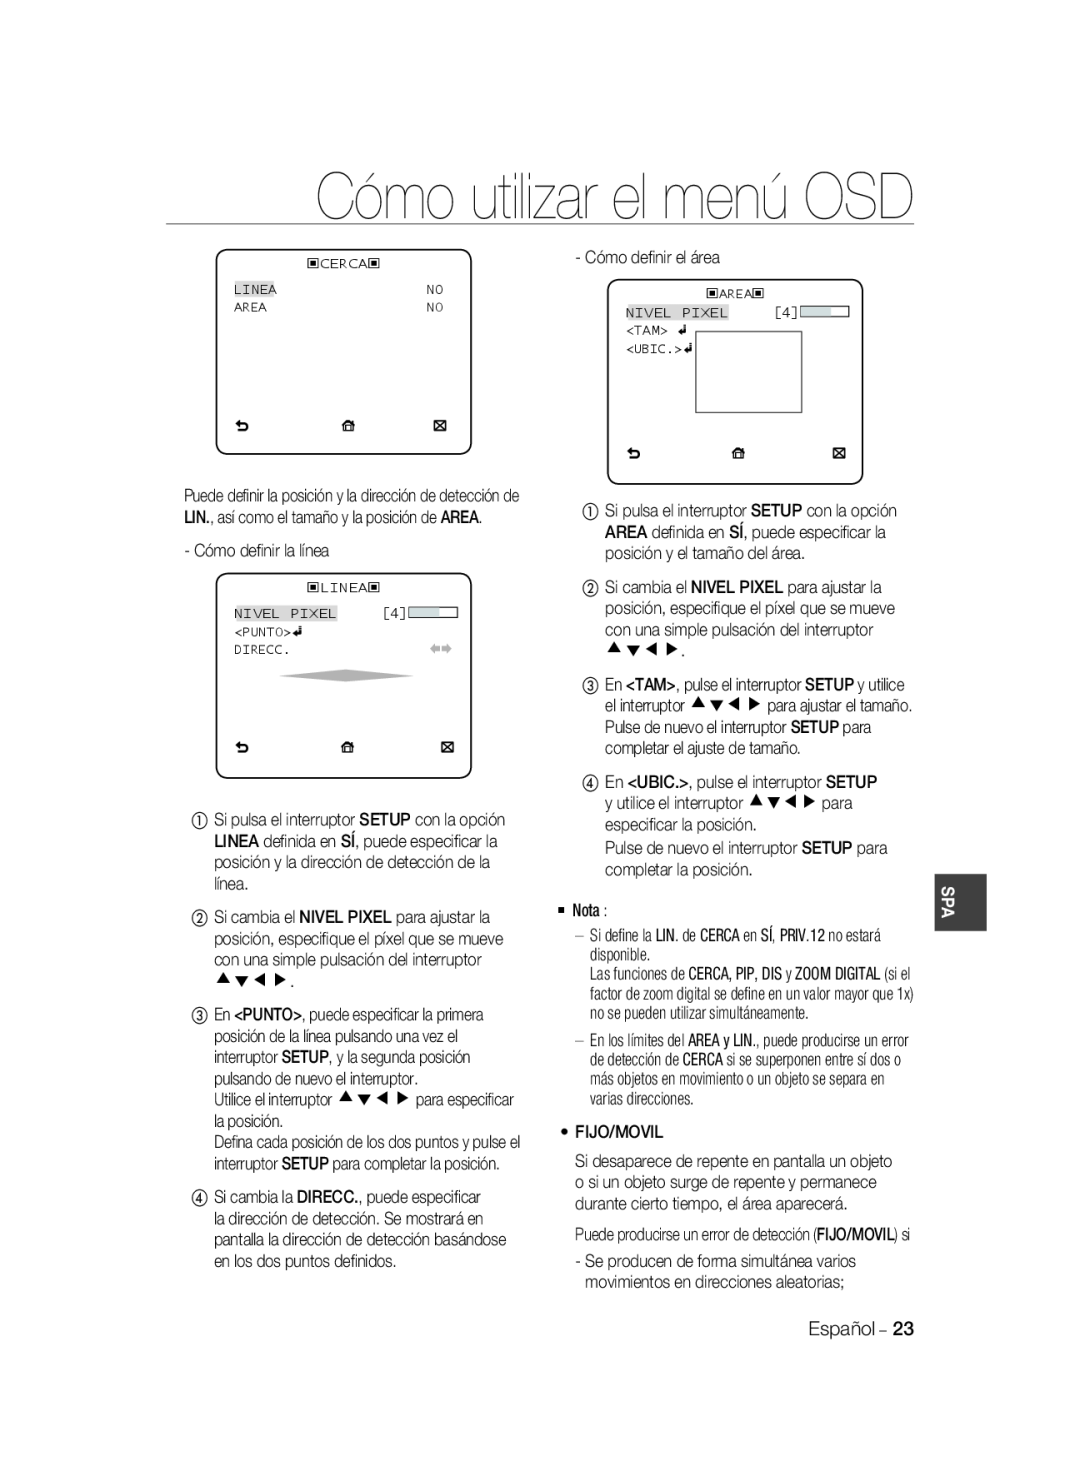 Samsung SCC-B2037P, SCC-B2337P manual Cómo utilizar el menú OSD, Pulse de nuevo el interruptor SETUP para 